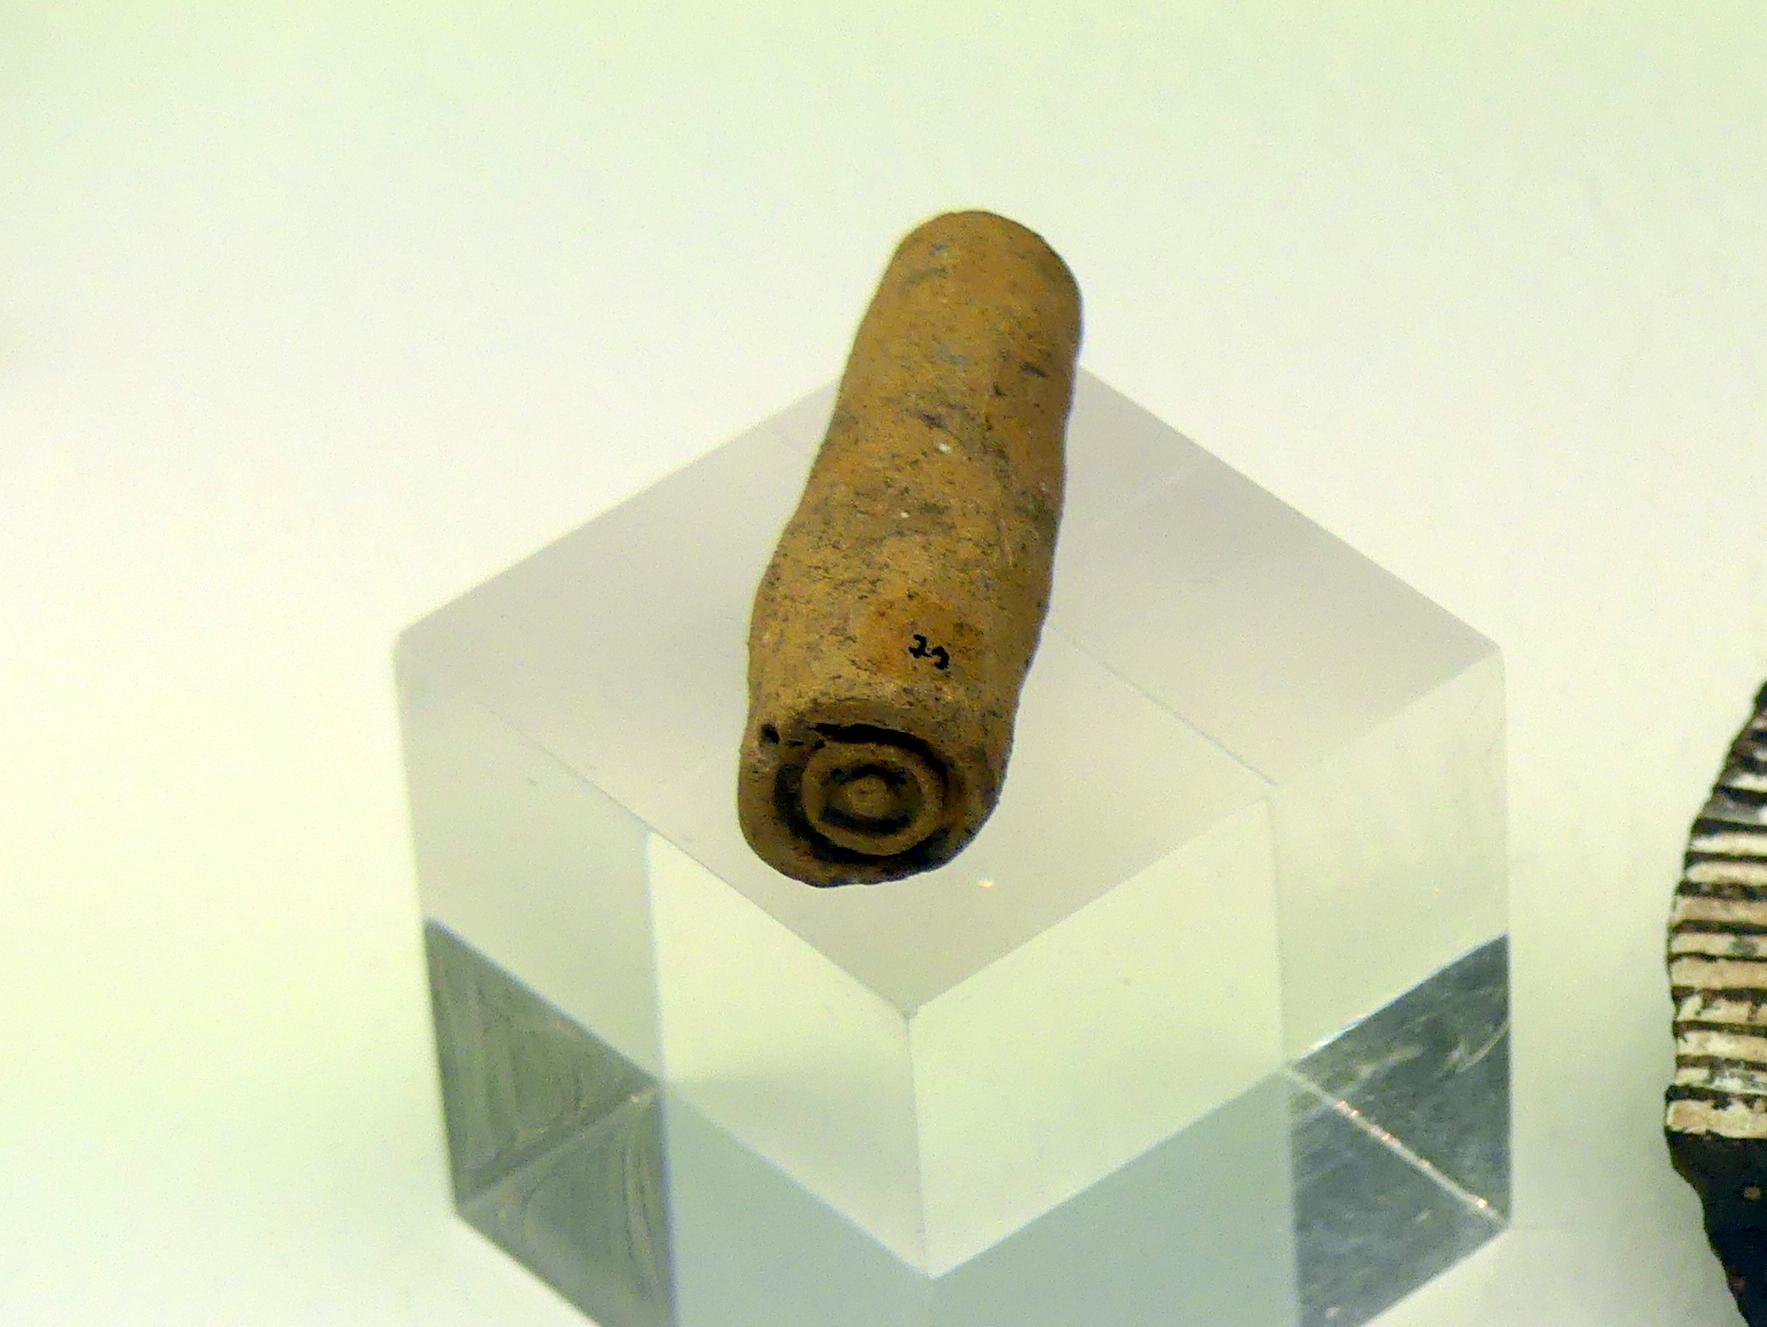 Tonstempel zum Herstellen von Verzierungen, Hallstattzeit, 700 - 200 v. Chr., Bild 1/2